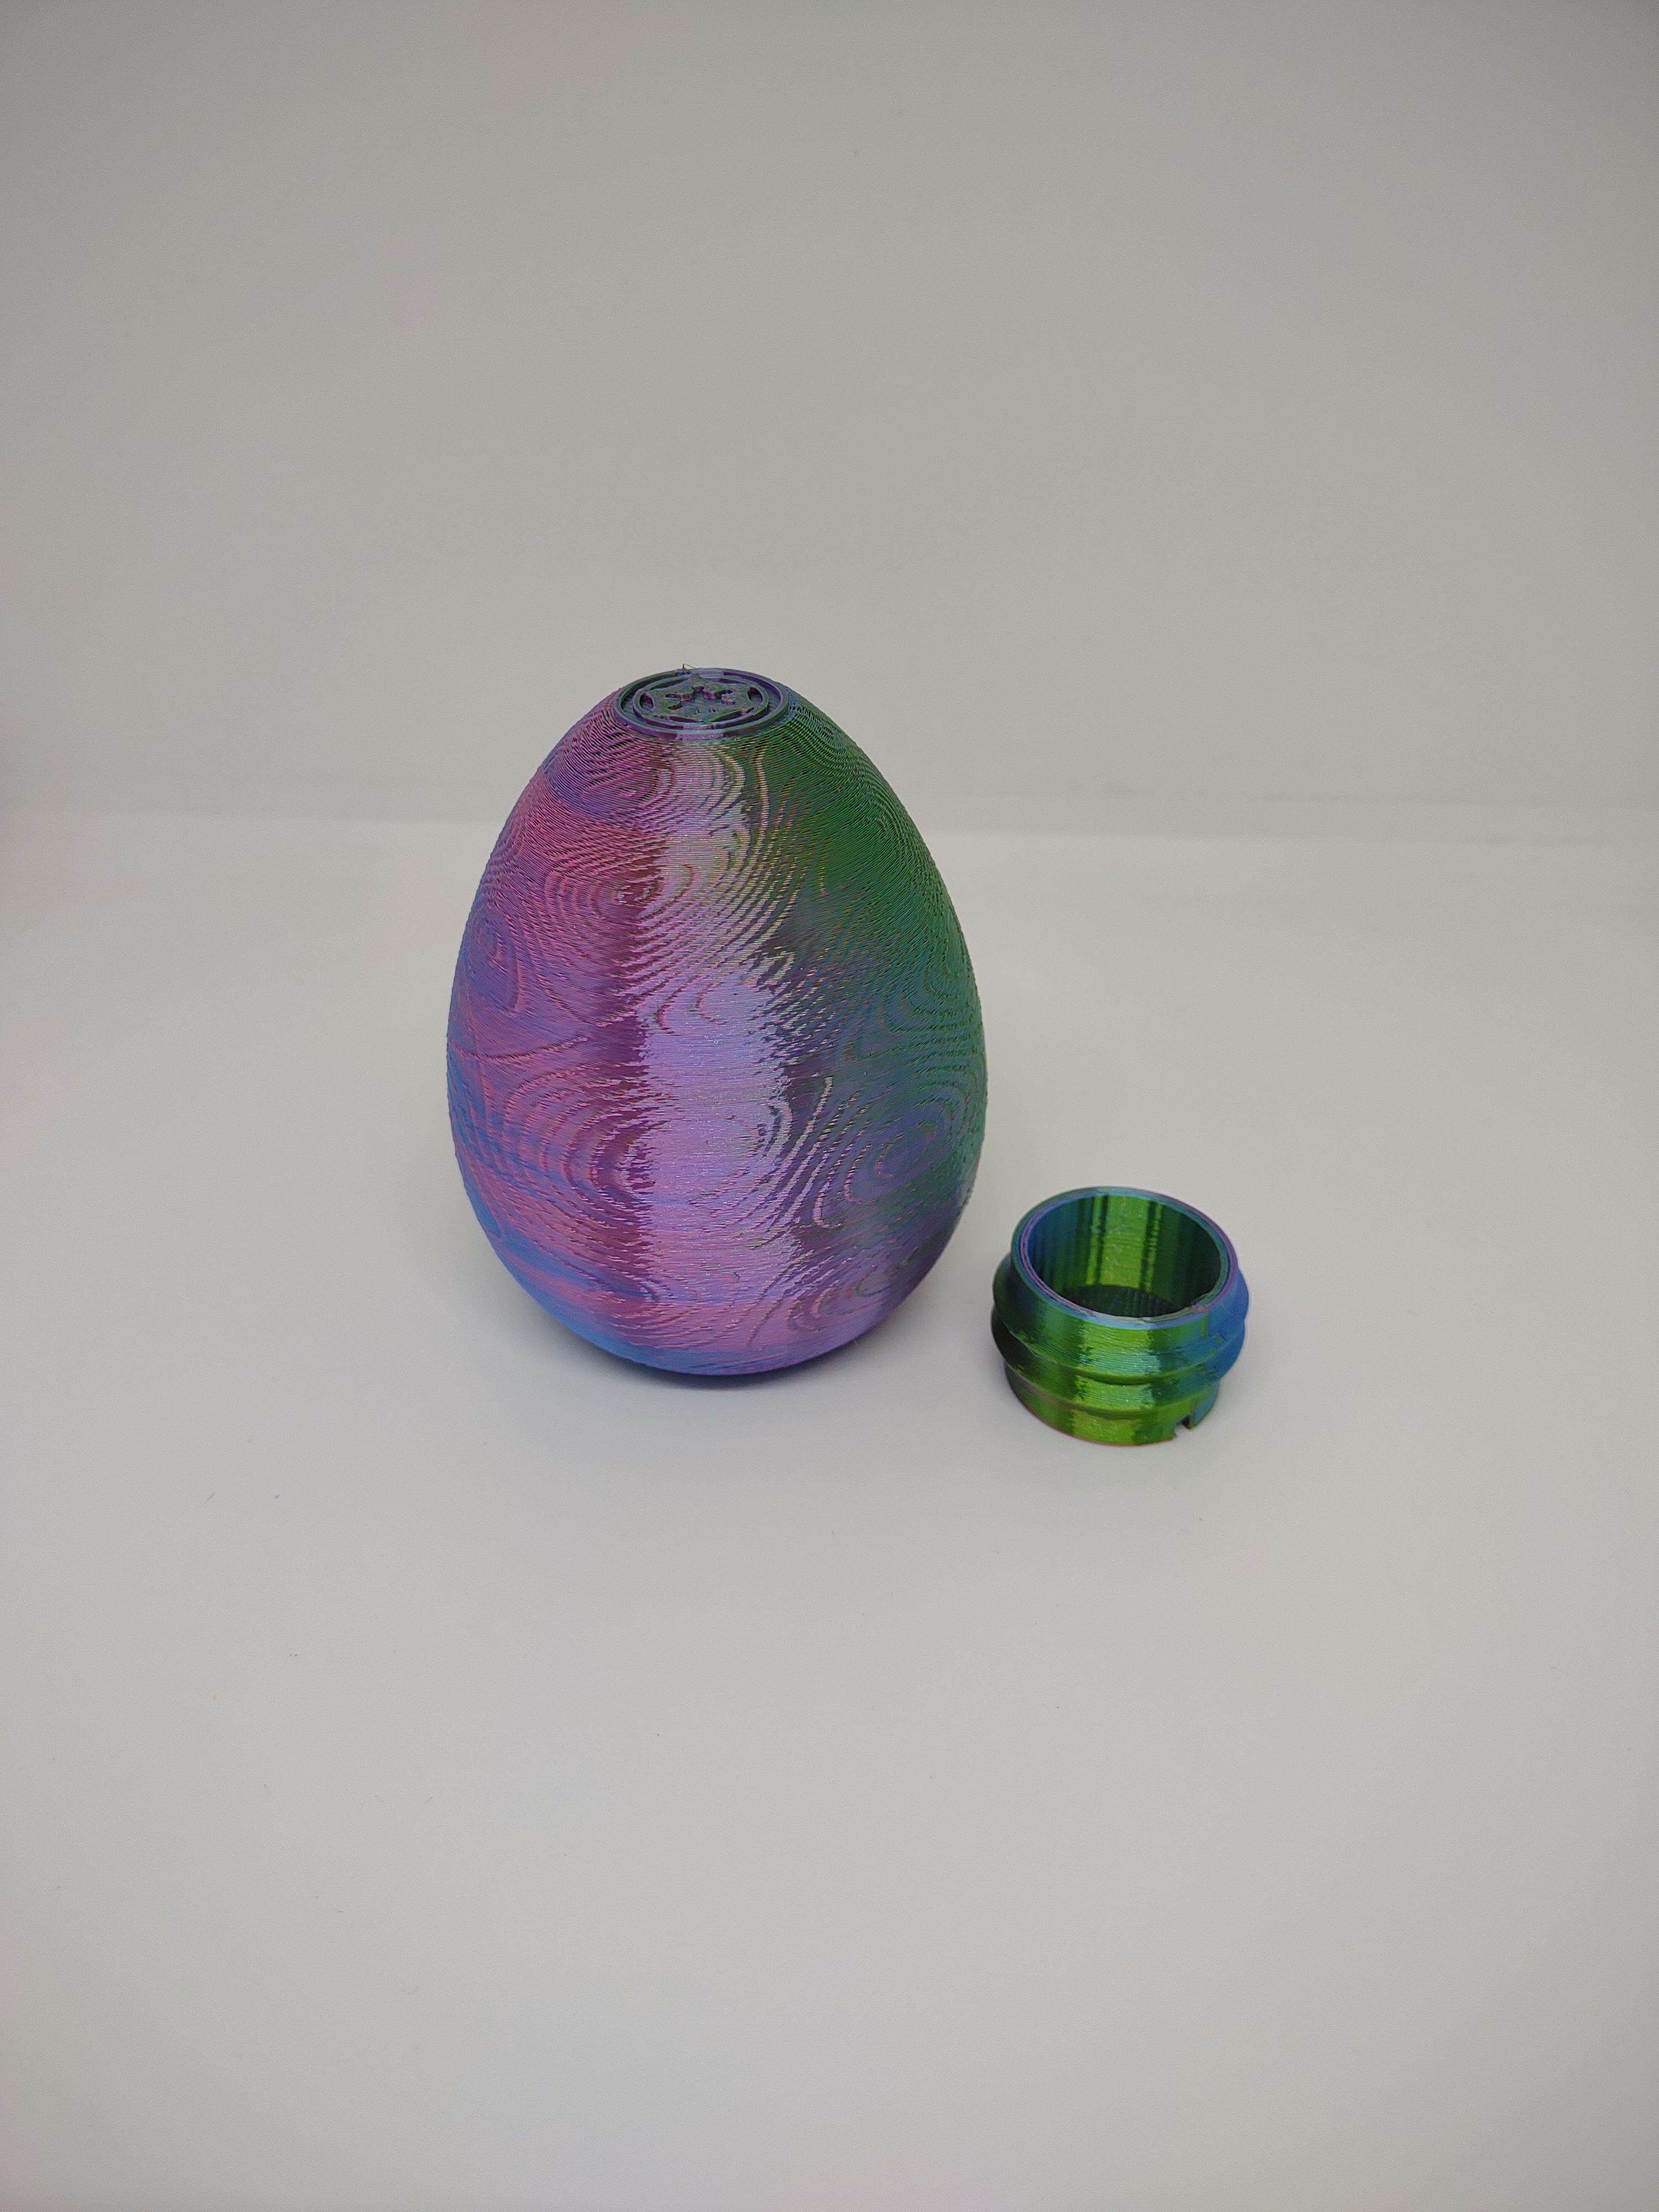 Beskar Easter Egg v2 3d model